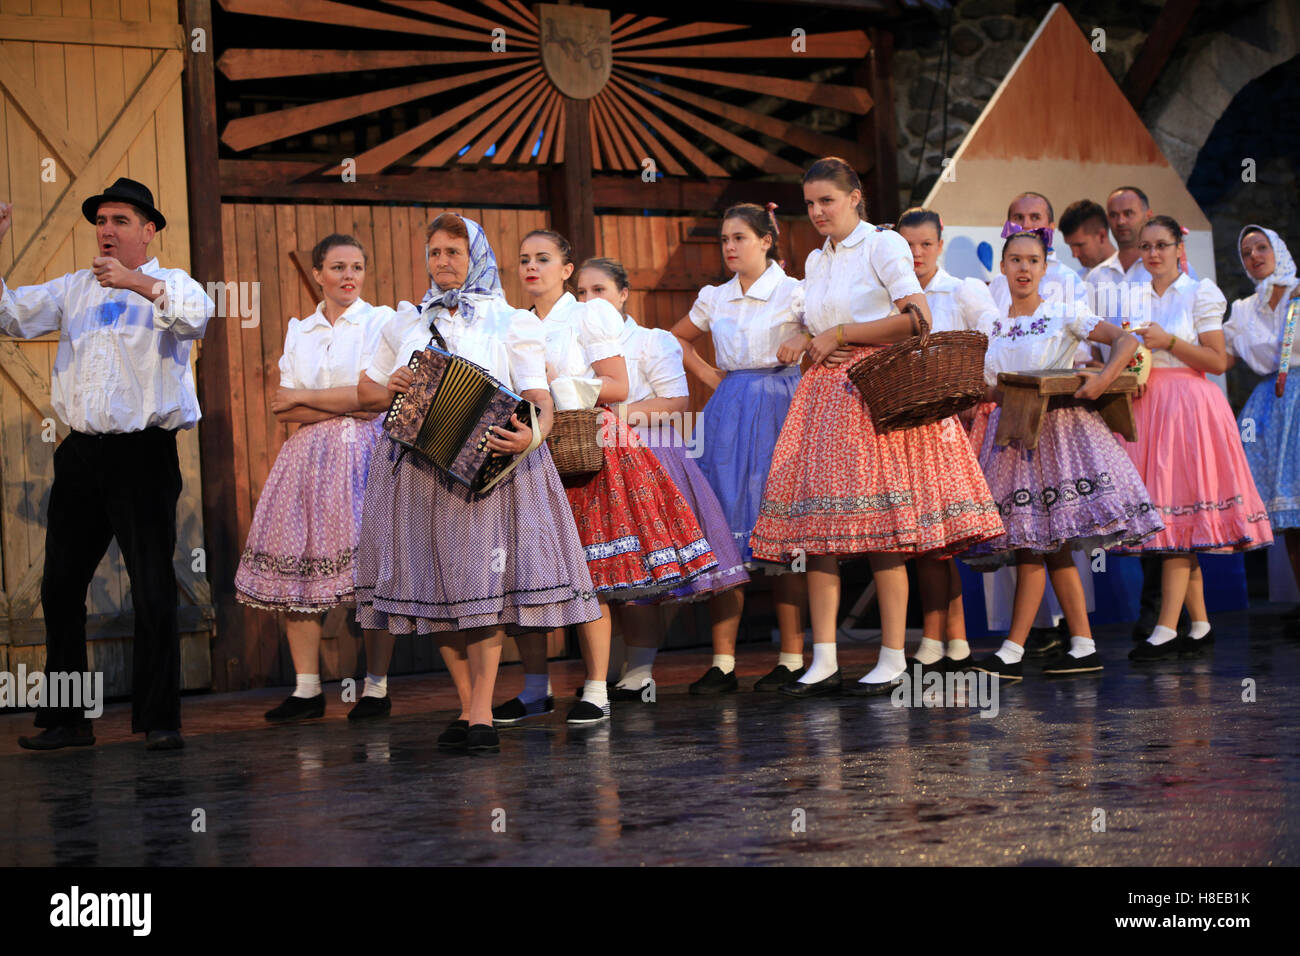 Ensemble folklorique slovaque en prestation au festival du folklore, Hontianska Parada Hrusov, la Slovaquie. Banque D'Images